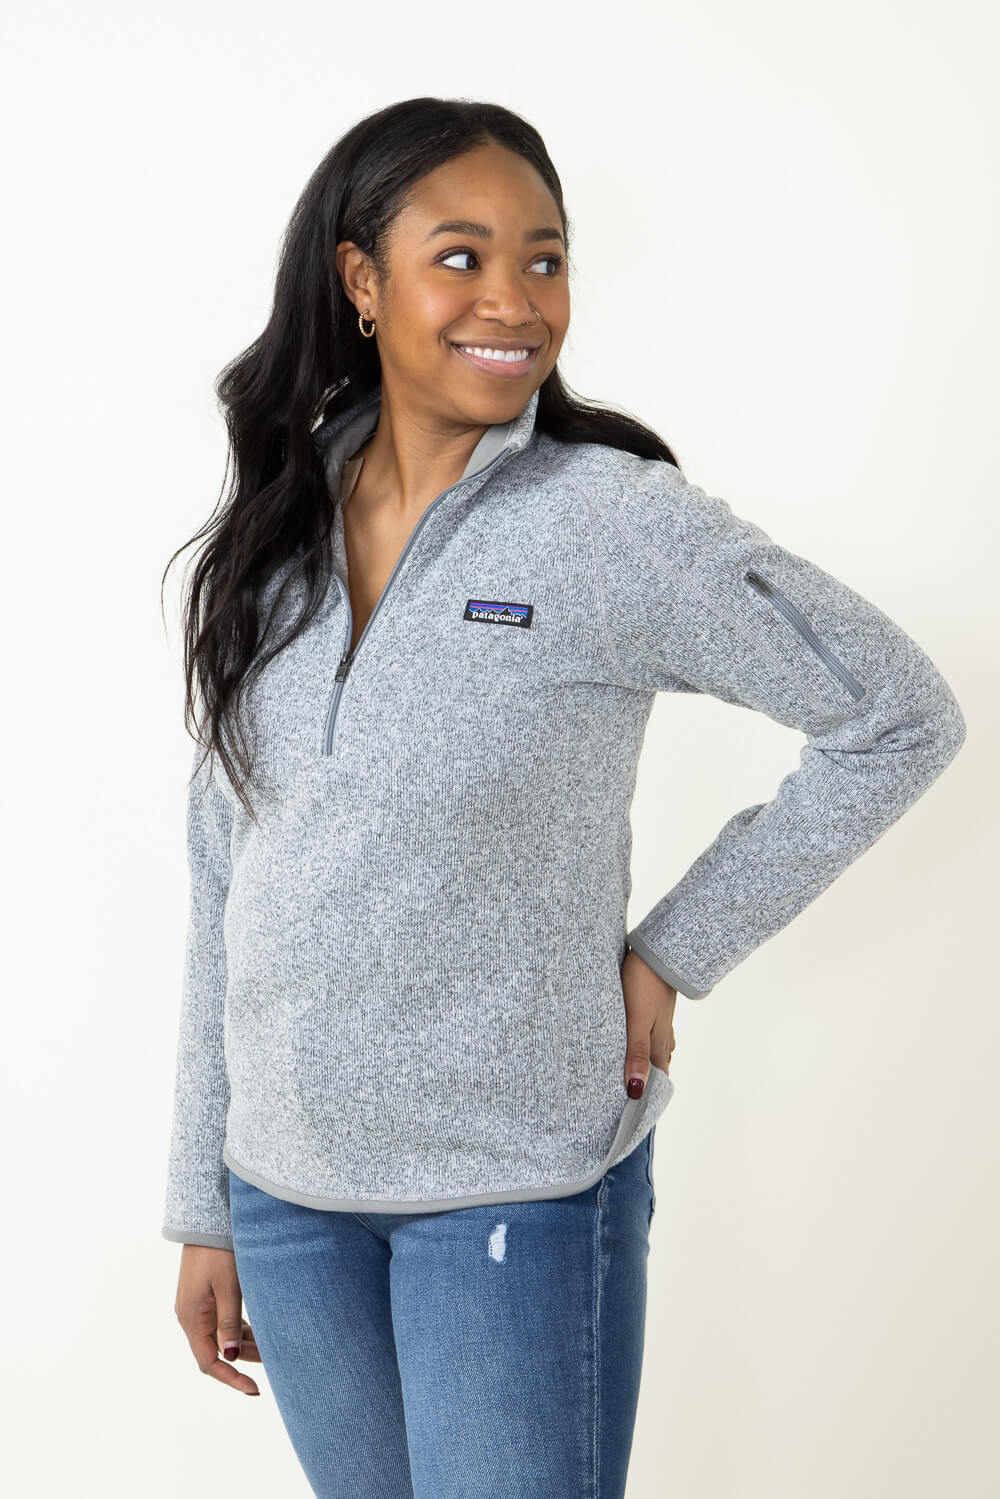 Patagonia Women's Better Sweater® 1/4-Zip Fleece - Current Blue